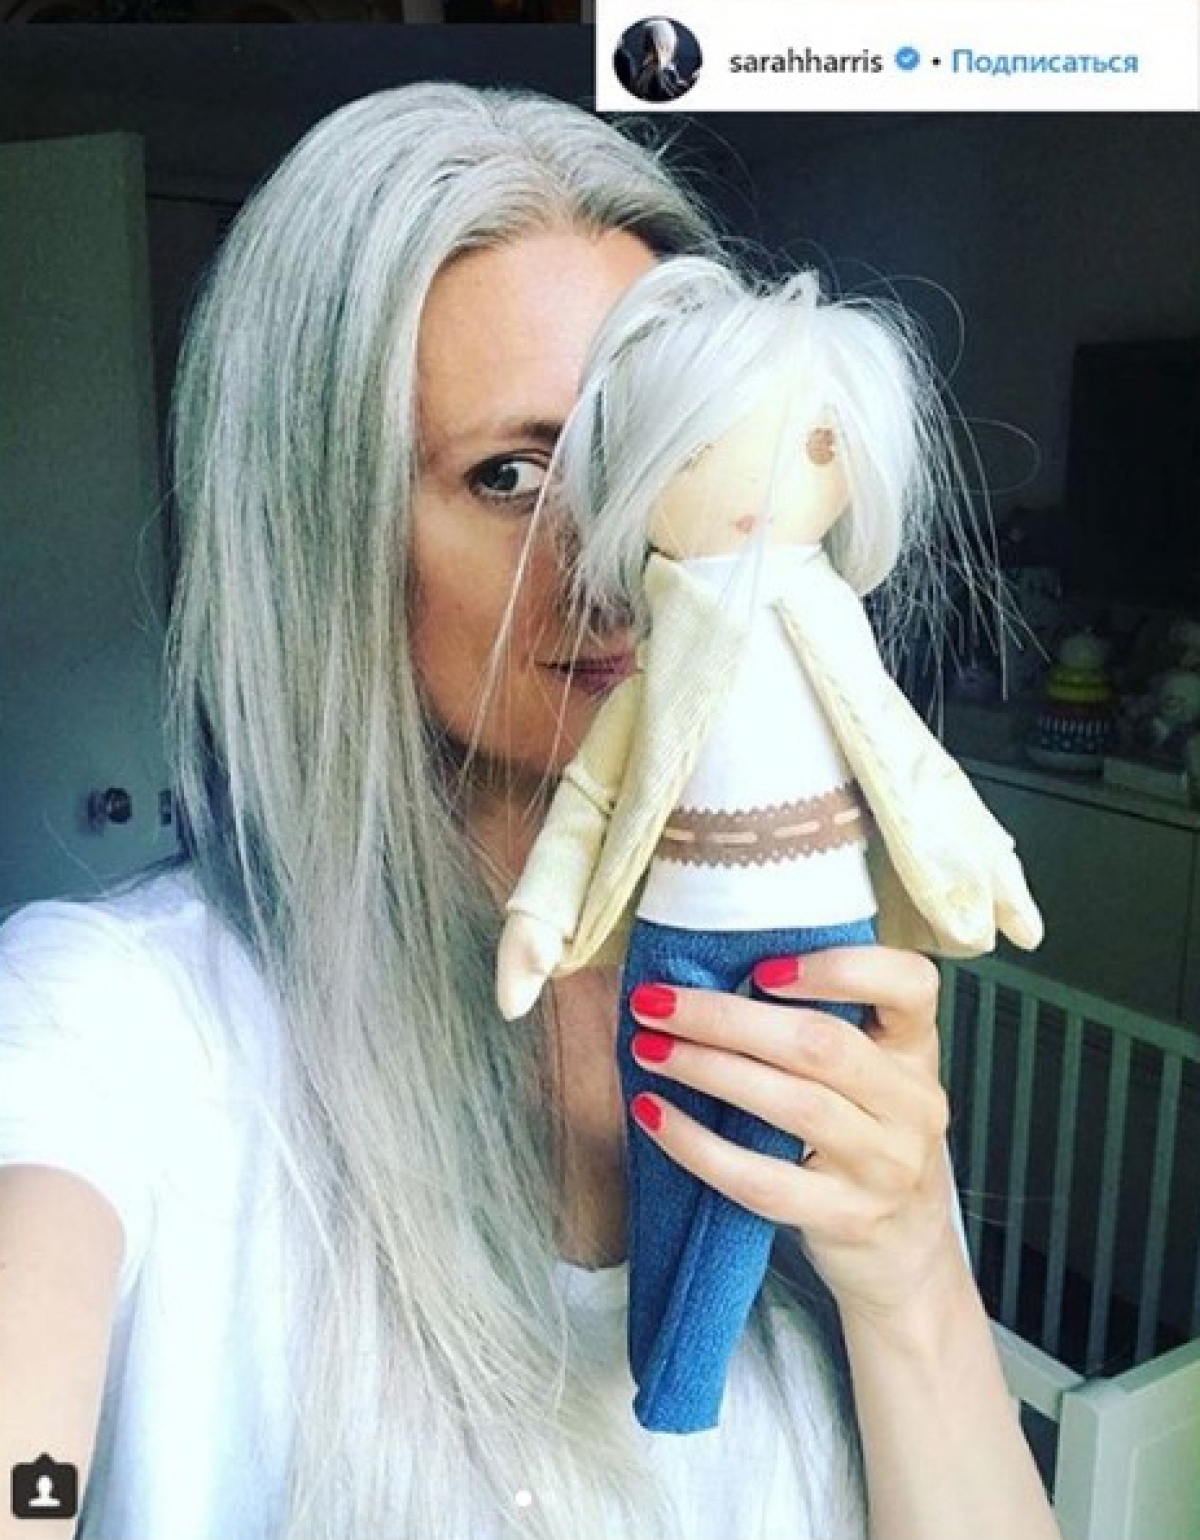 Казанская кукла живет в доме фичер-директора британского «Vogue»